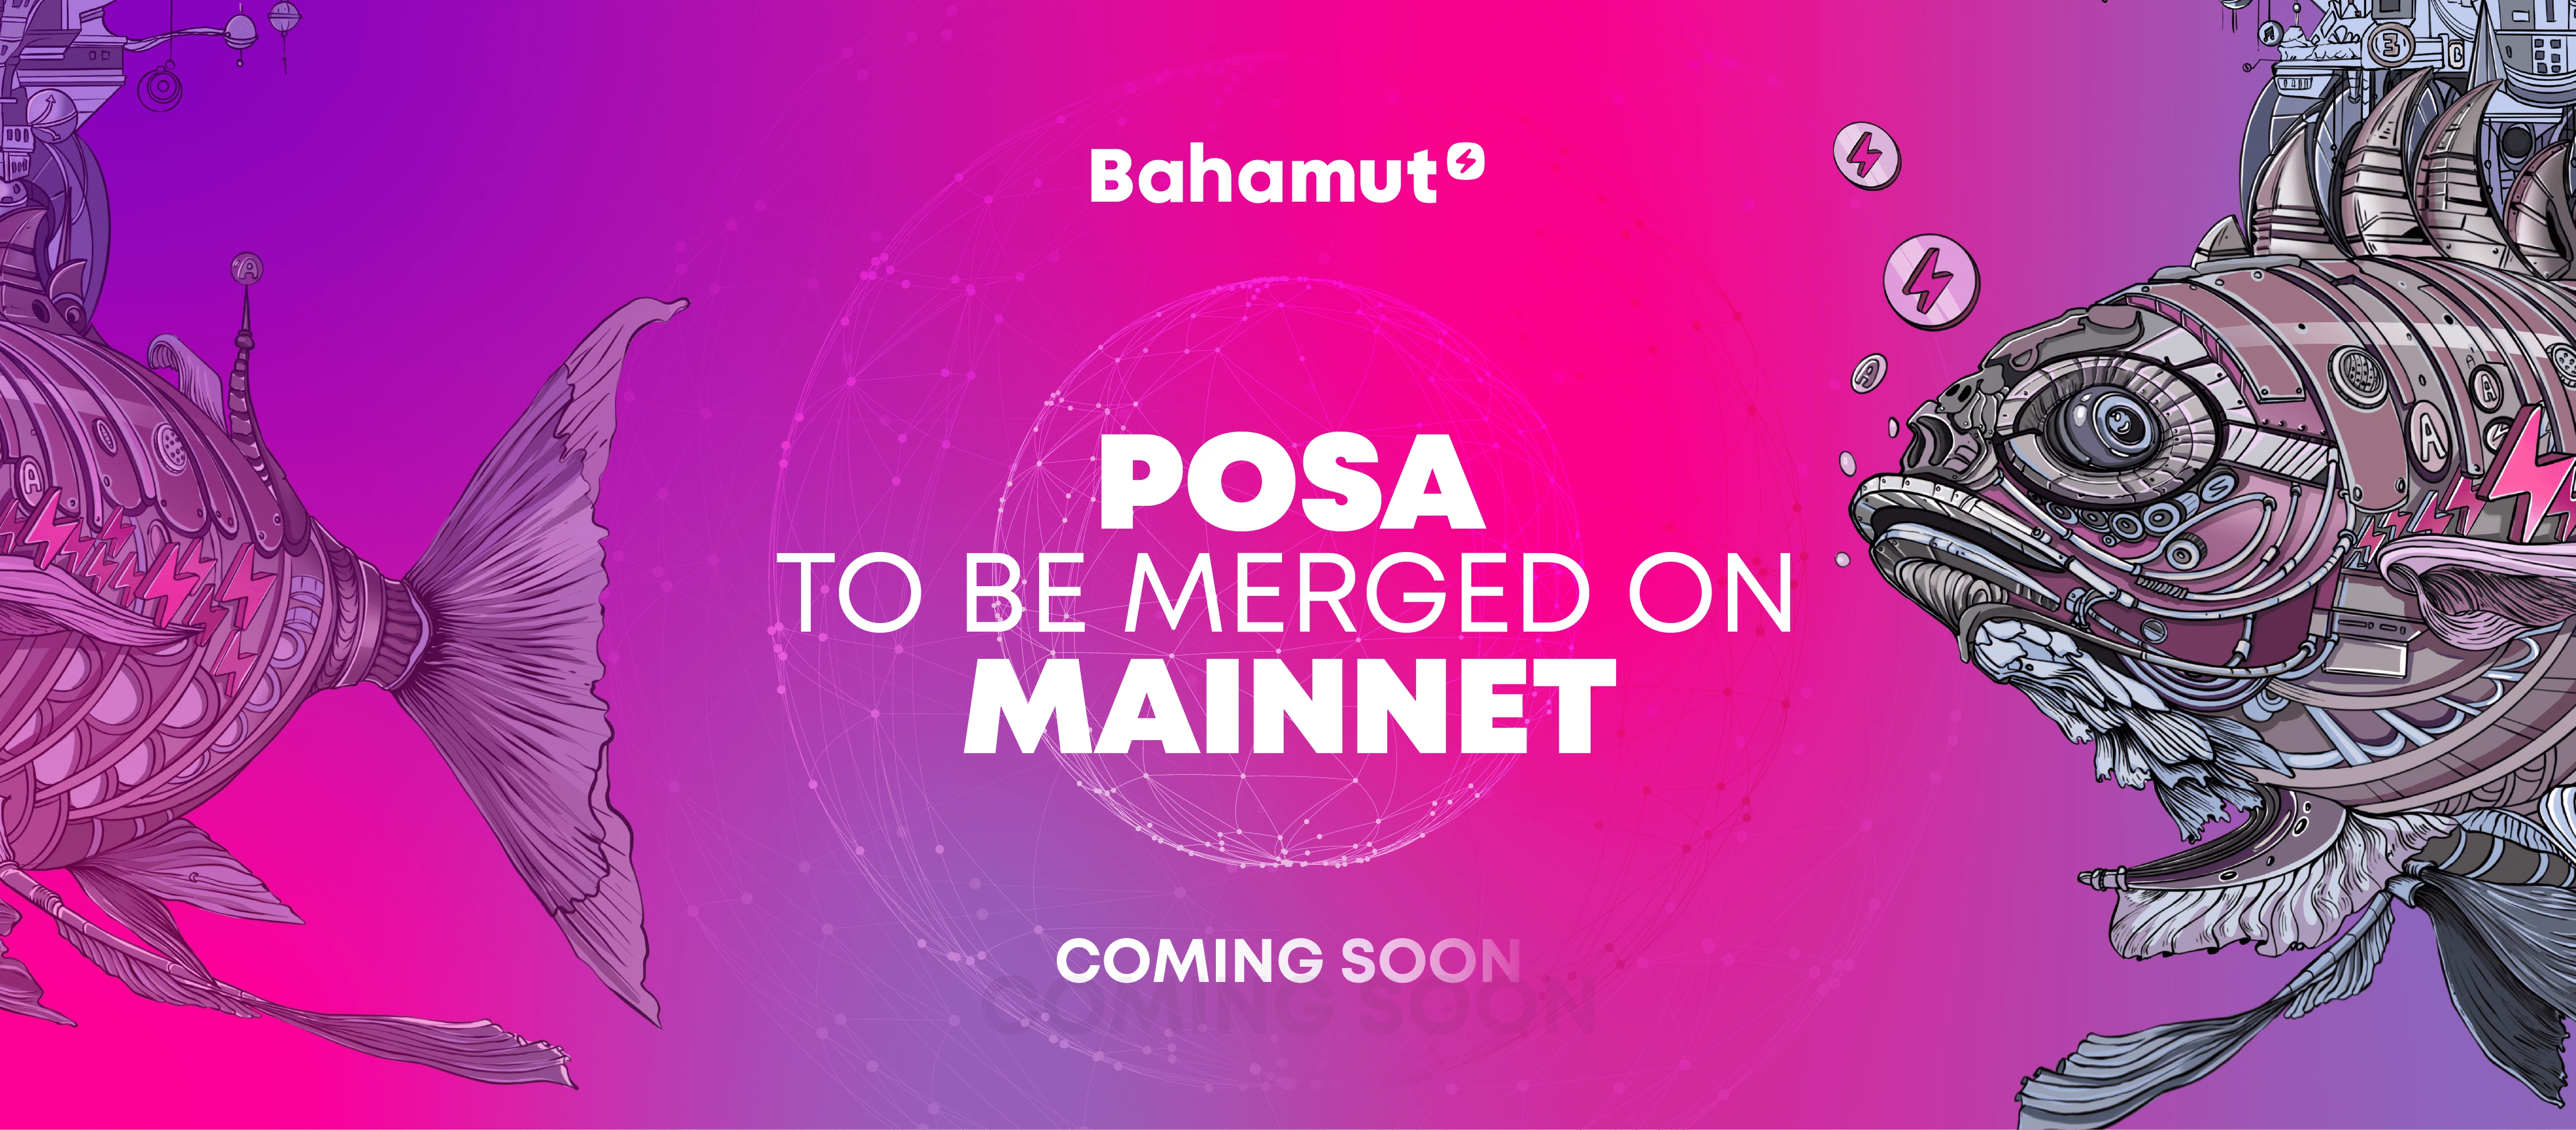 Bahamut ha completado con éxito la fusión de PoSA en la testnet de Oasis, y pronto se realizará la fusión en el mainnet.